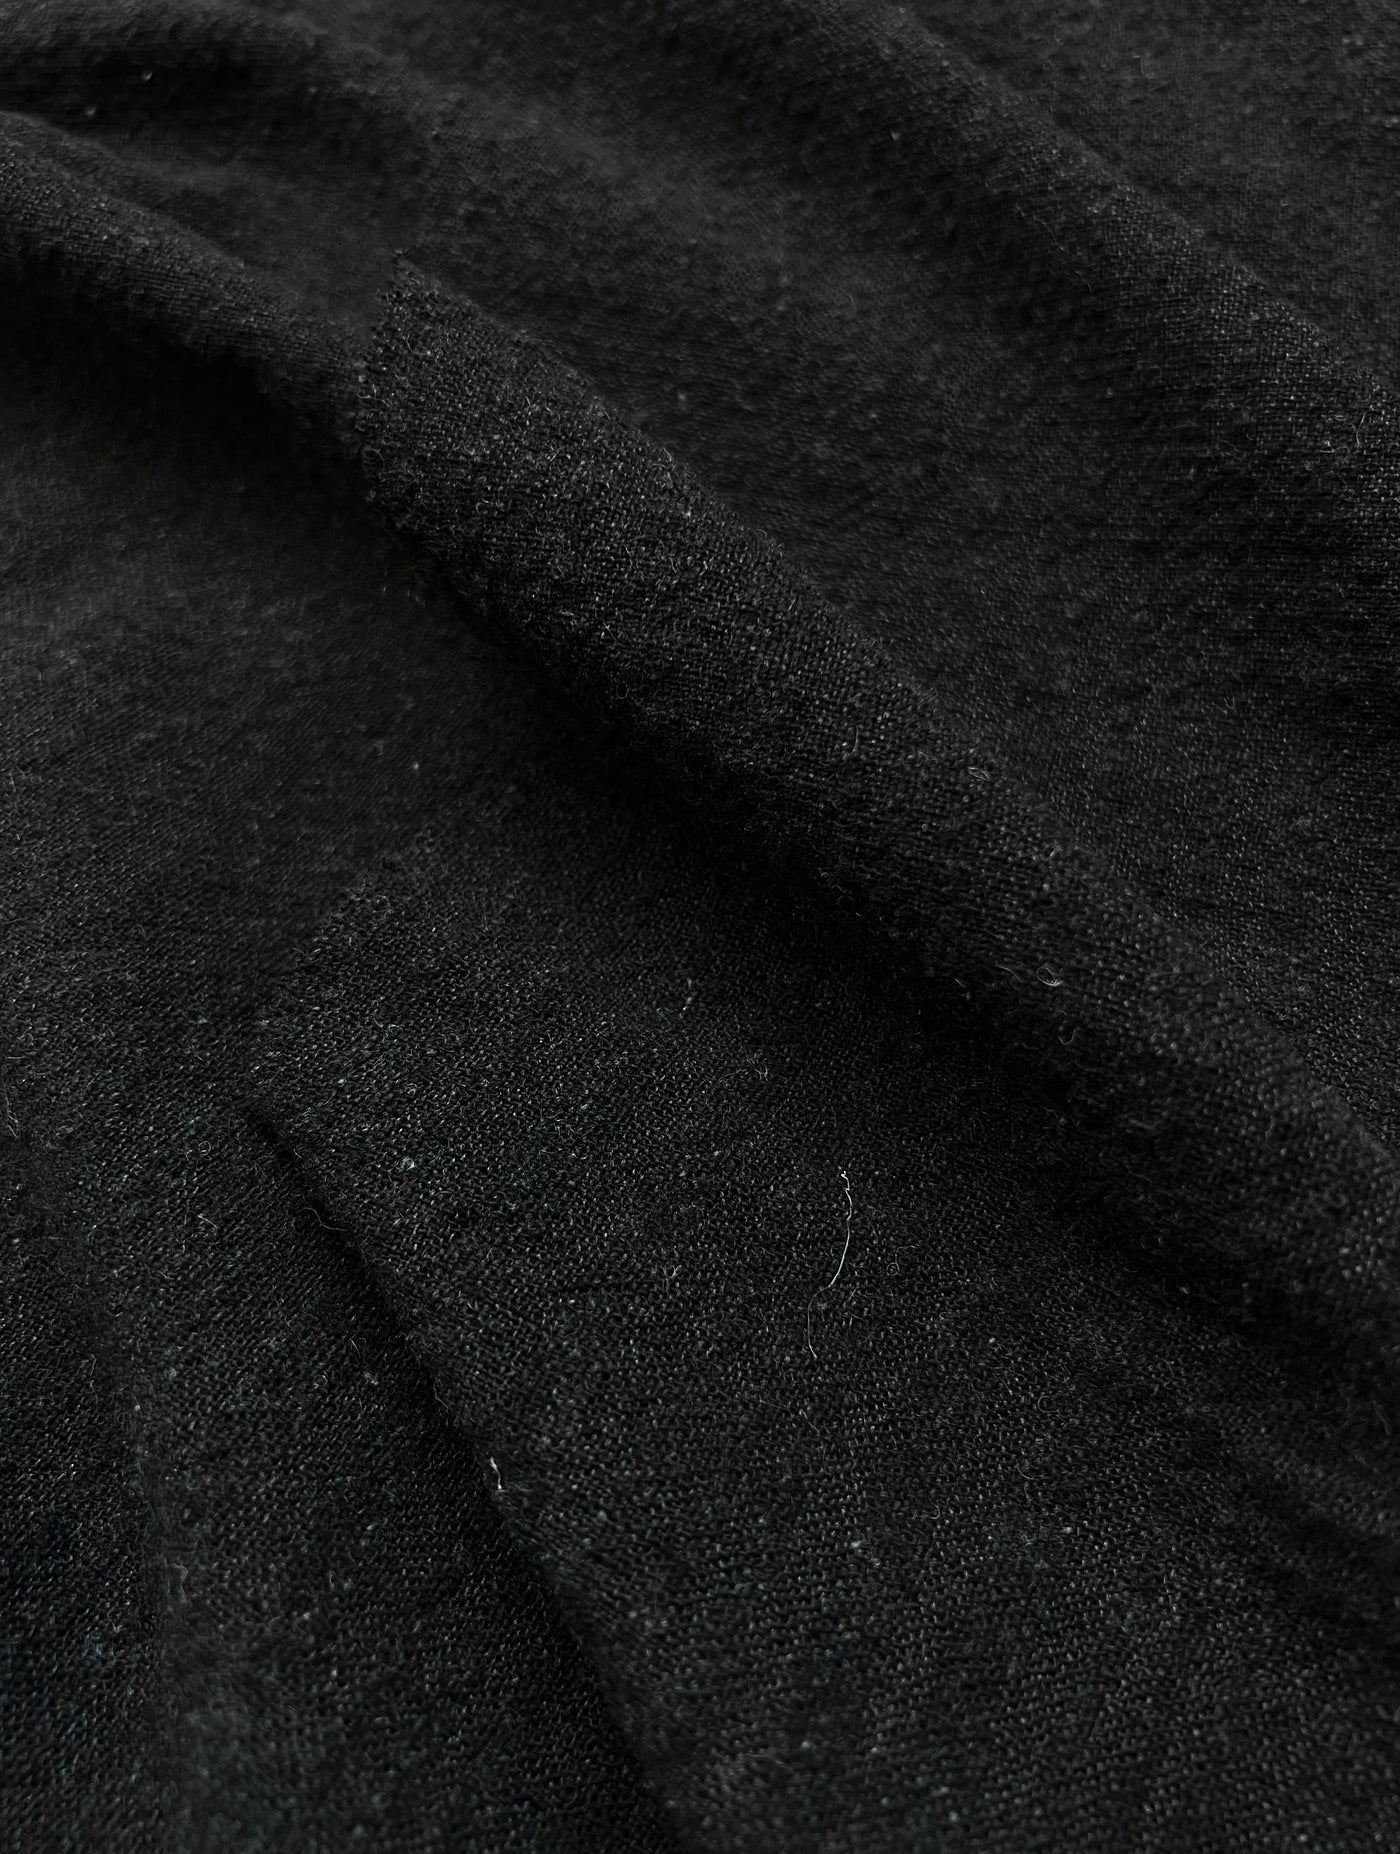 Wool Charcoal Plain Fabric